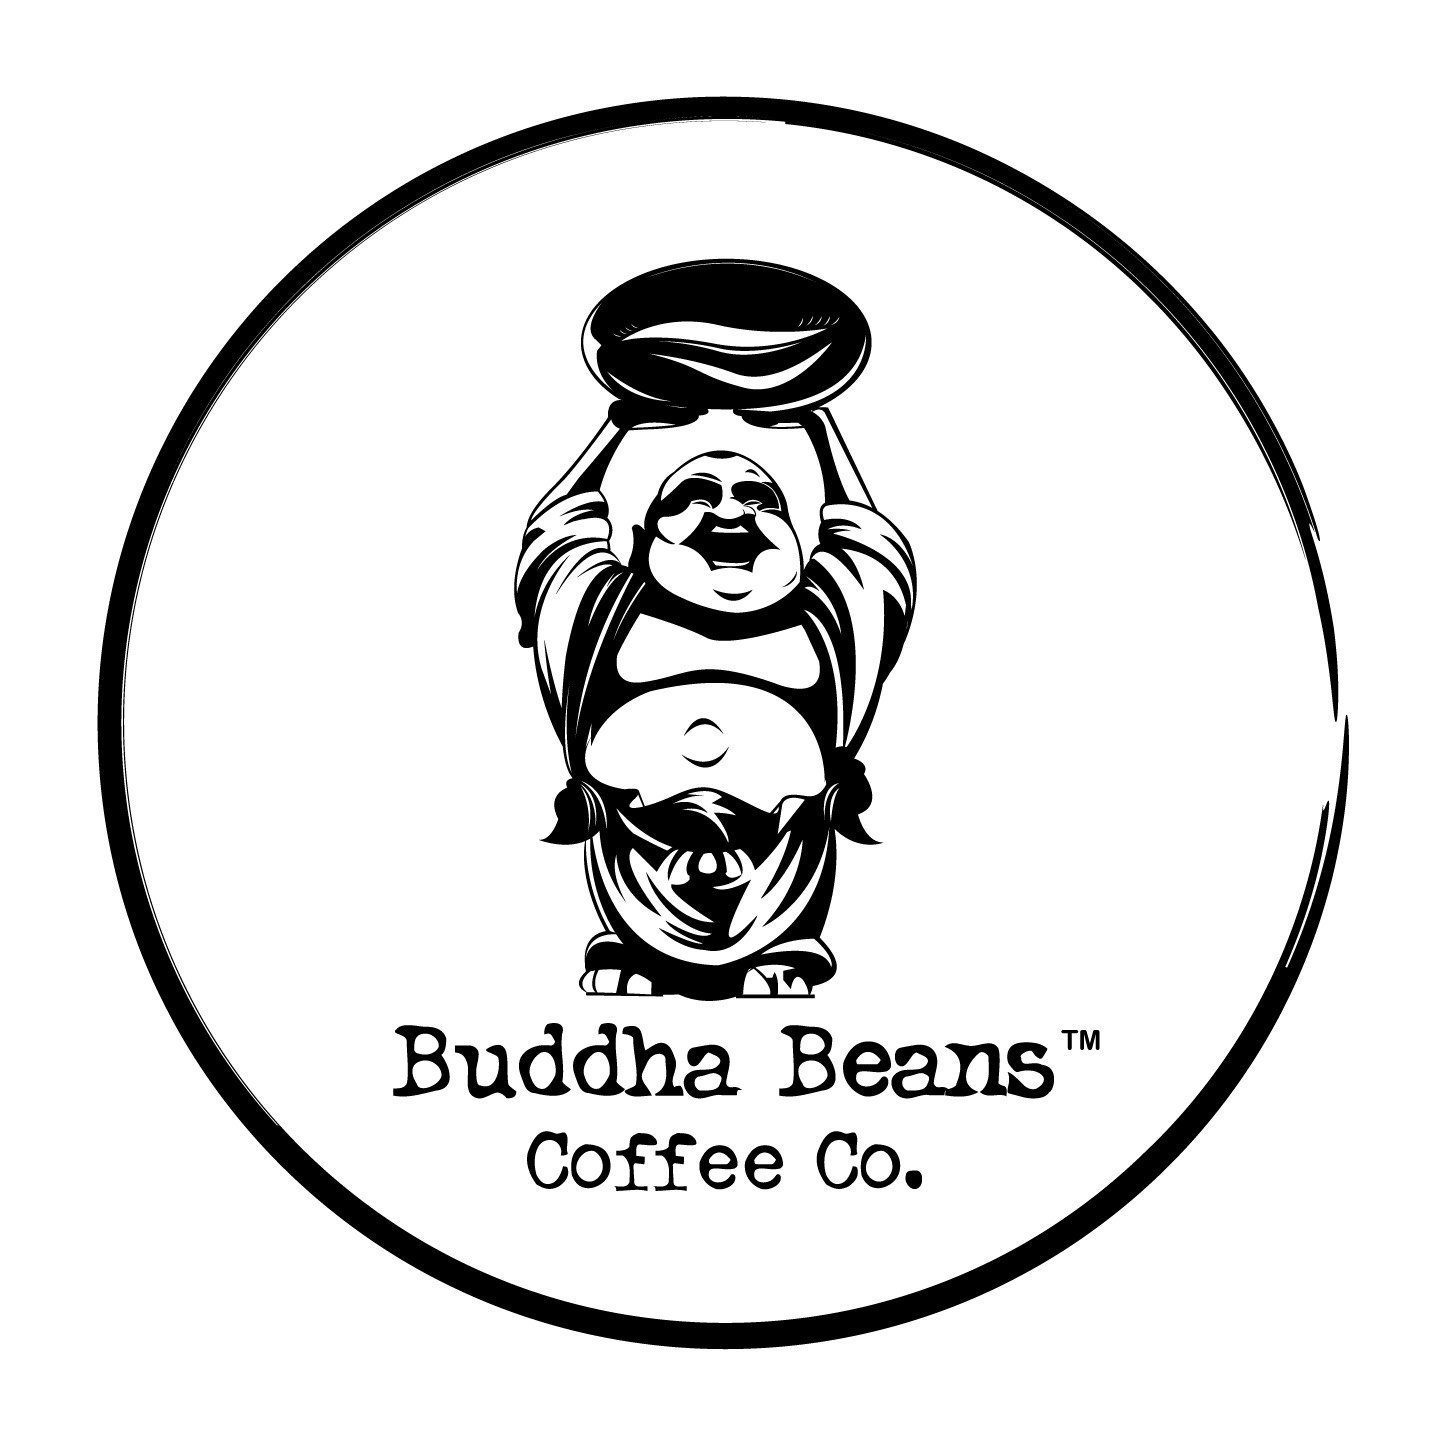 Buddah Beans